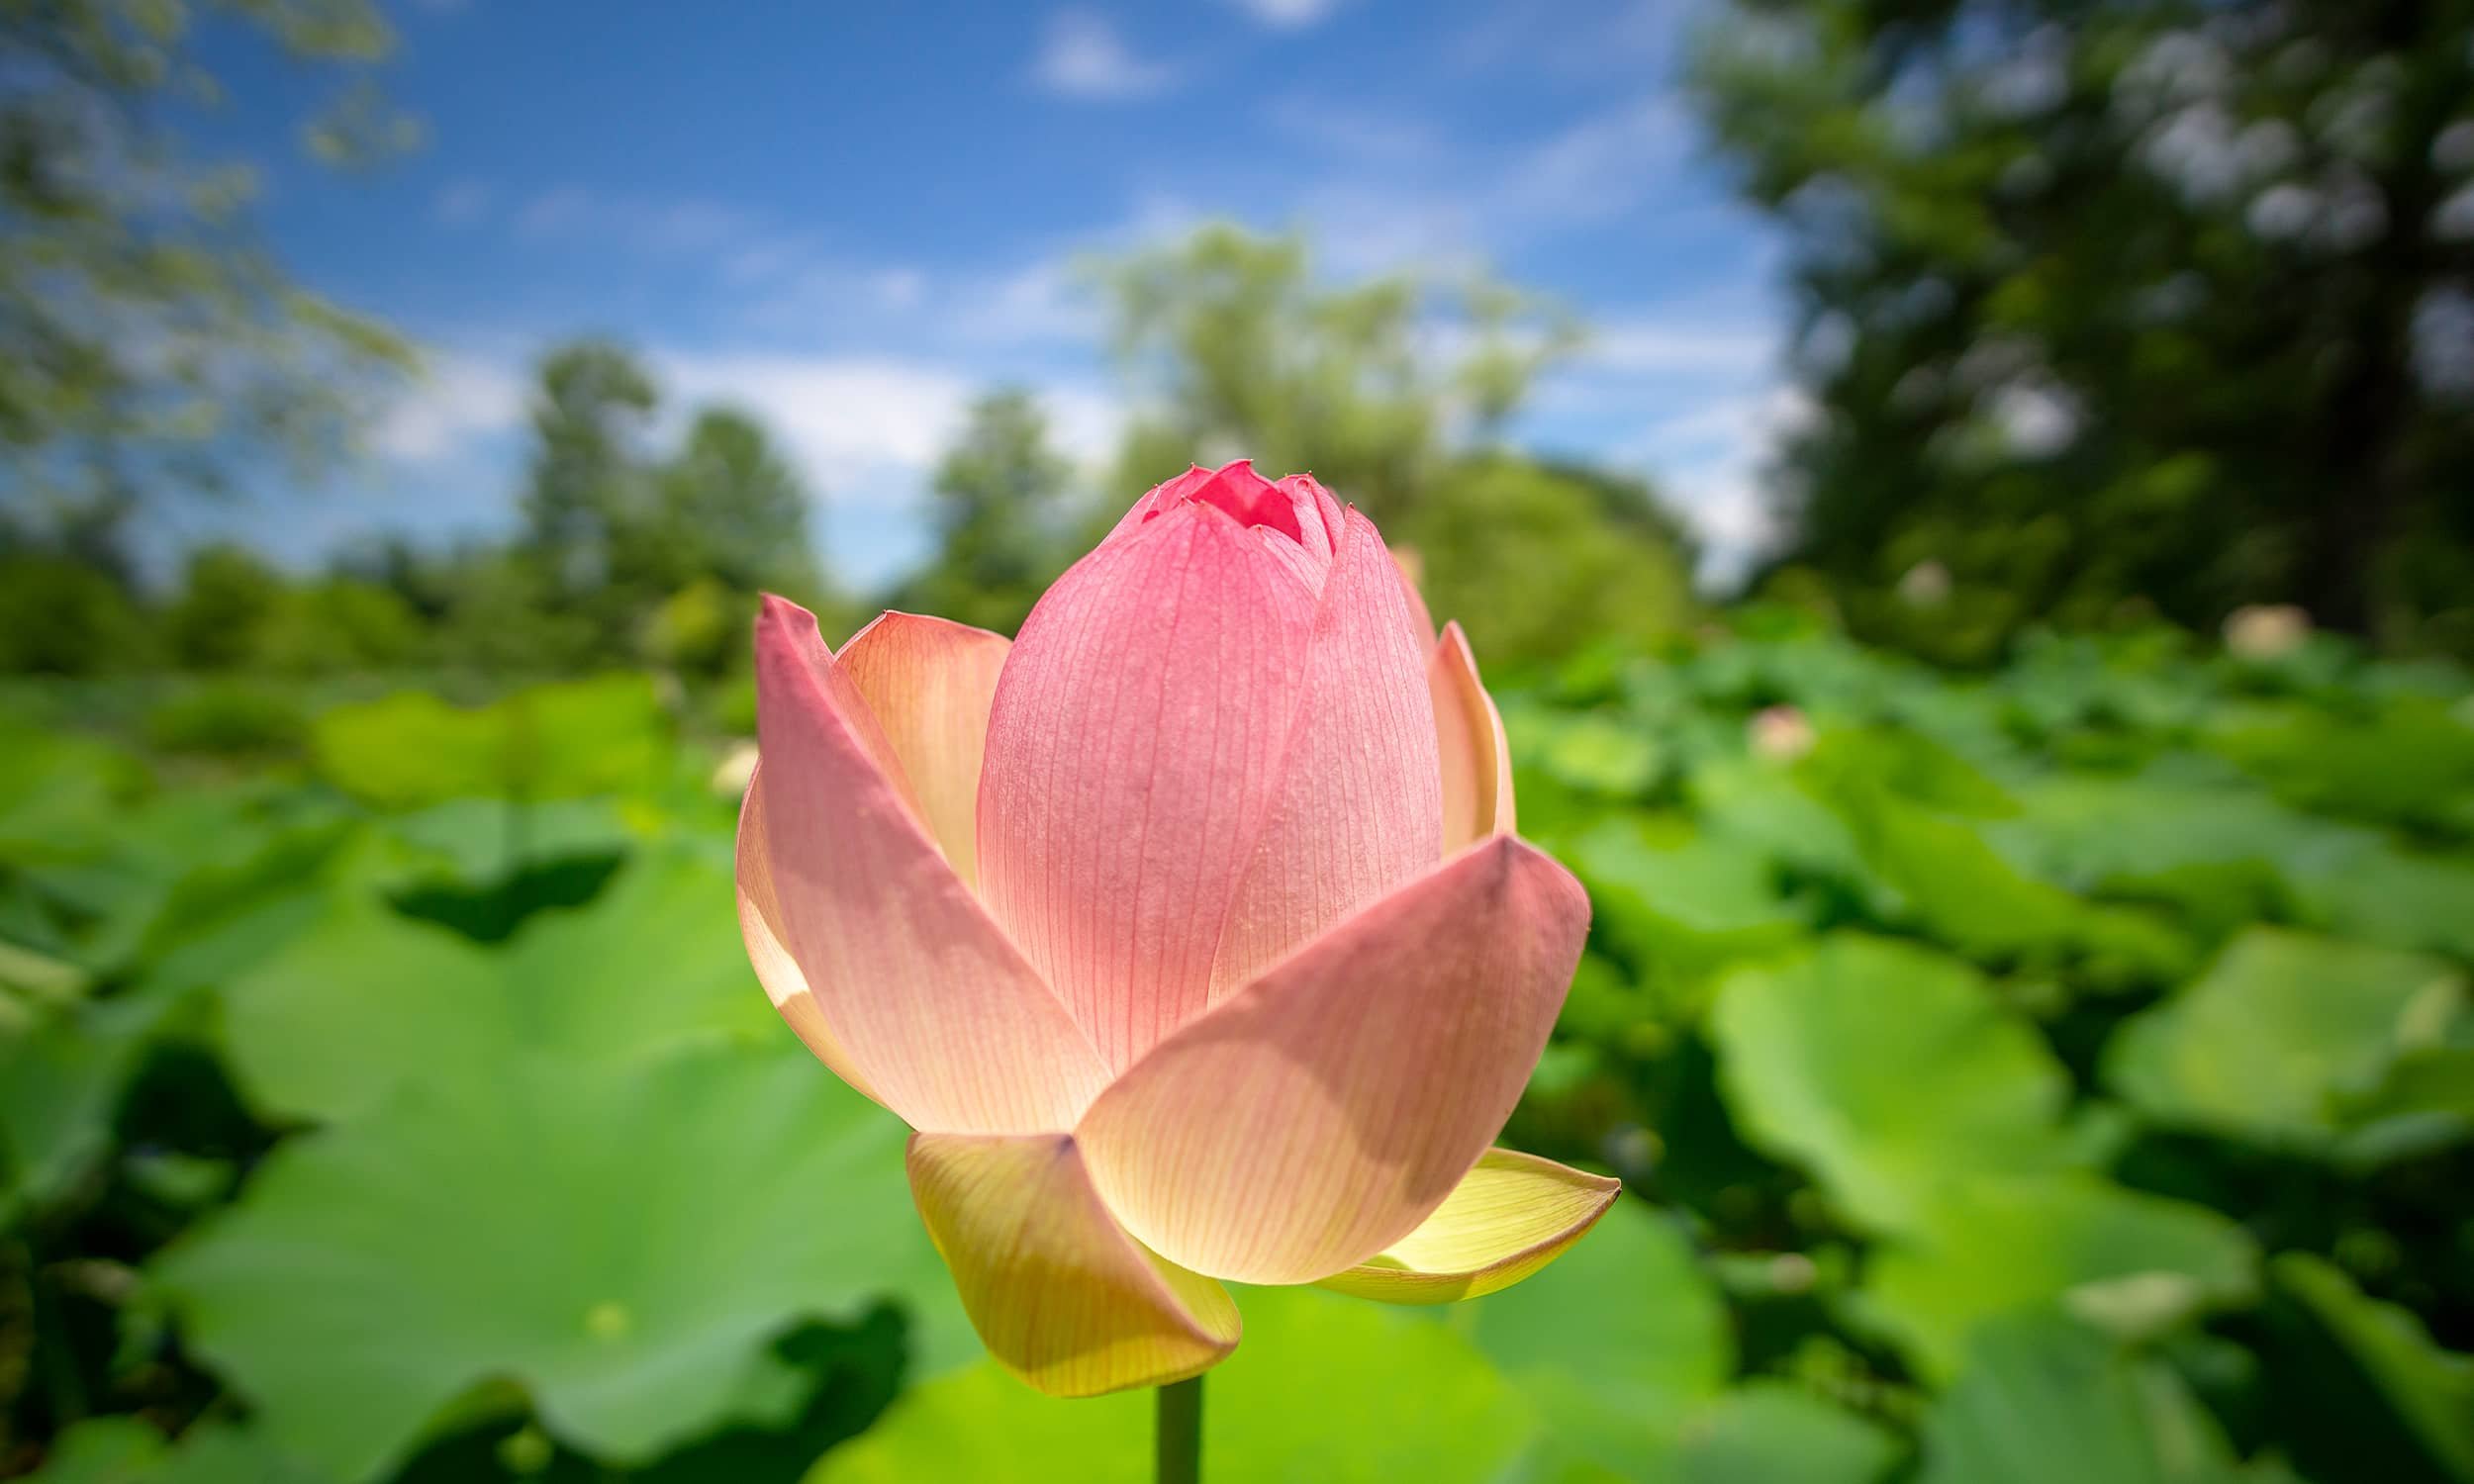 lotus-flower-at-kenilworth-aquatic-garden-washington-dc.jpg